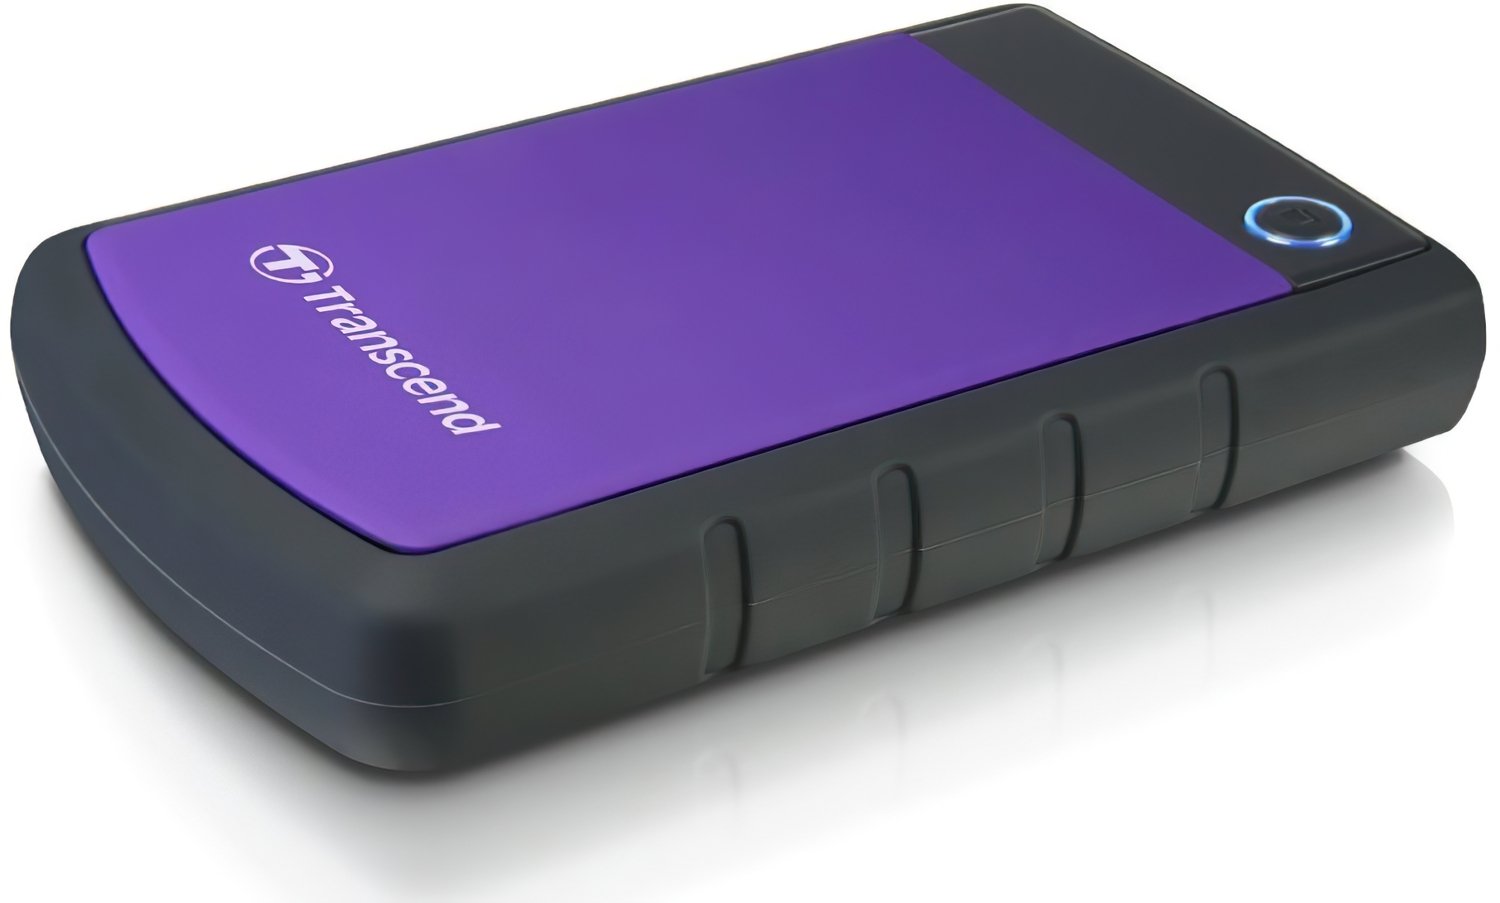 Жесткий диск TRANSCEND StoreJet 2.5 USB 3.0 4TB серия H Purple (TS4TSJ25H3P) фото 